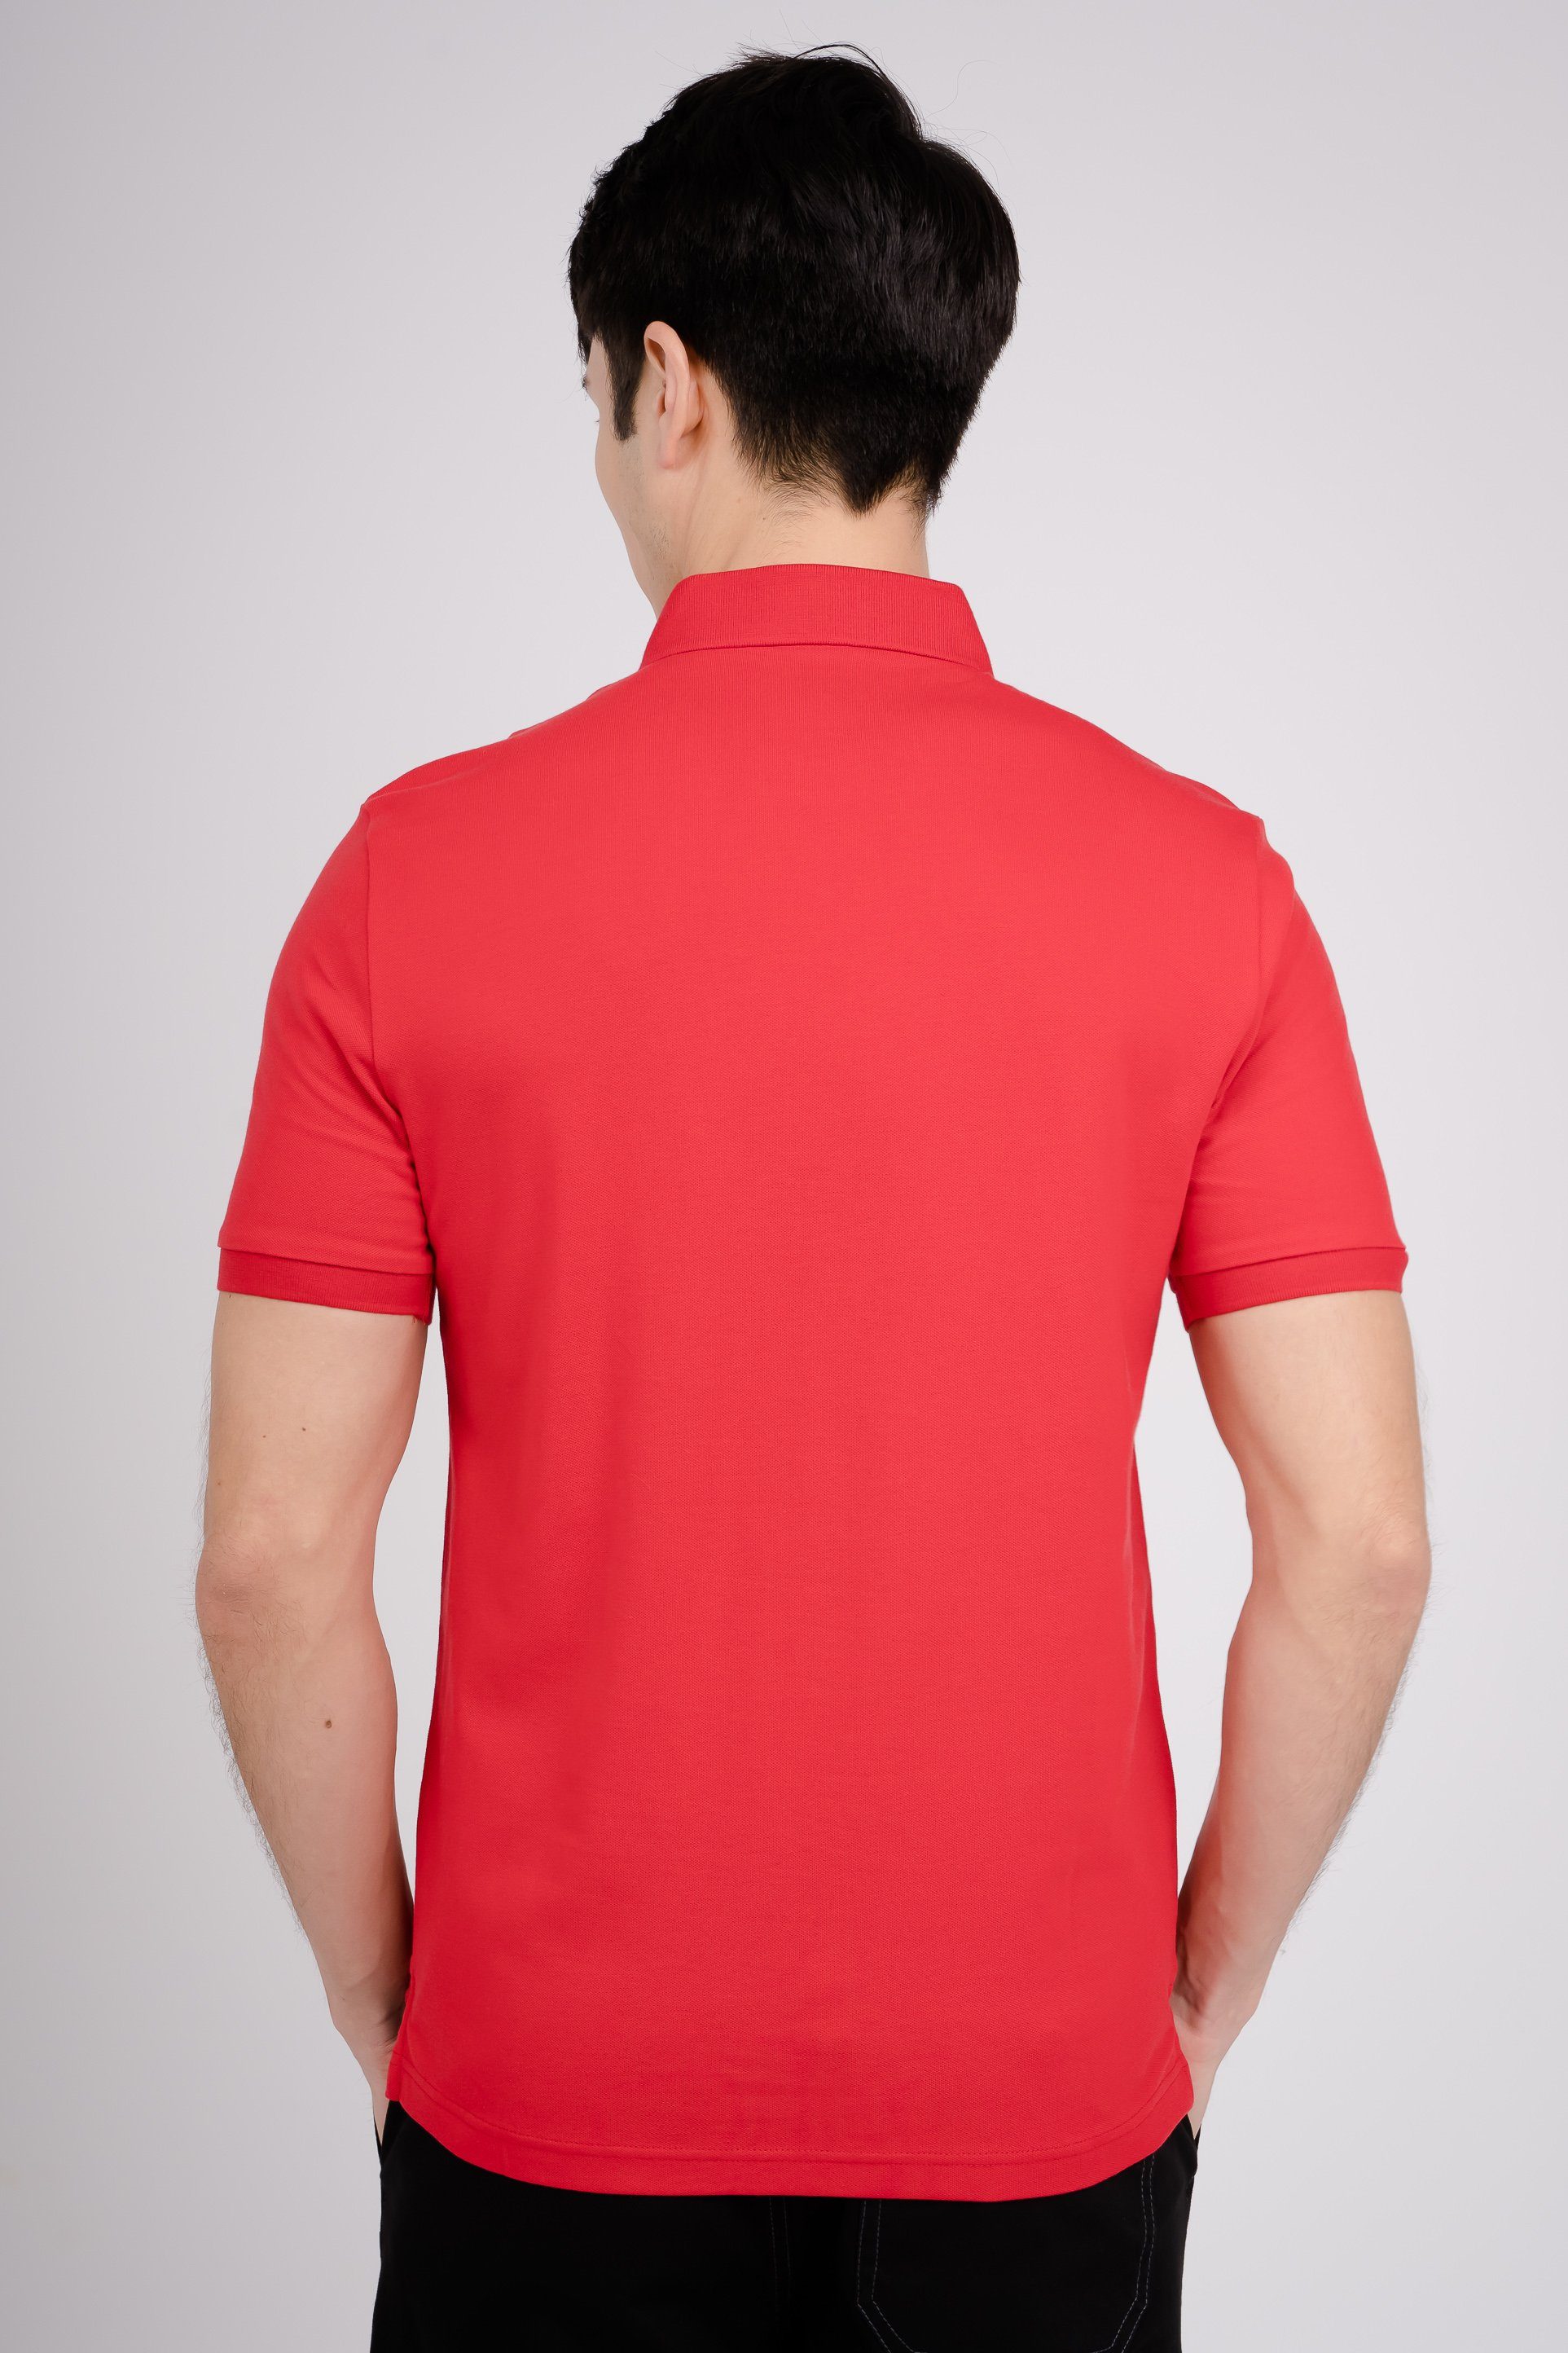 GIORDANO Poloshirt rot mit toller Stickerei